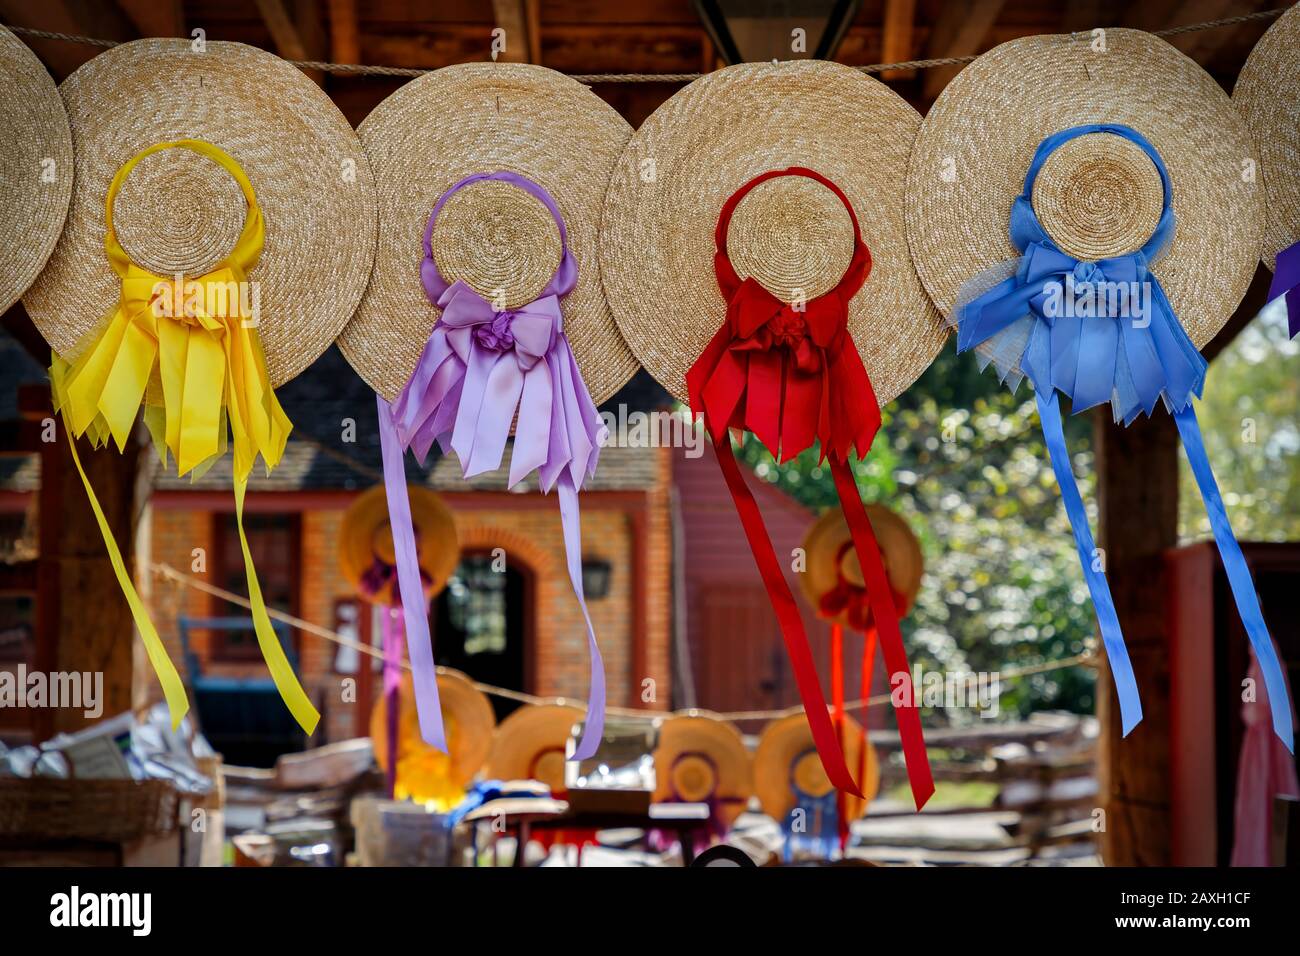 Nastri colorati che pendono dai cappelli di paglia delle Signore, che soffiano nella brezza, a Williamsburg, Virginia. Foto Stock